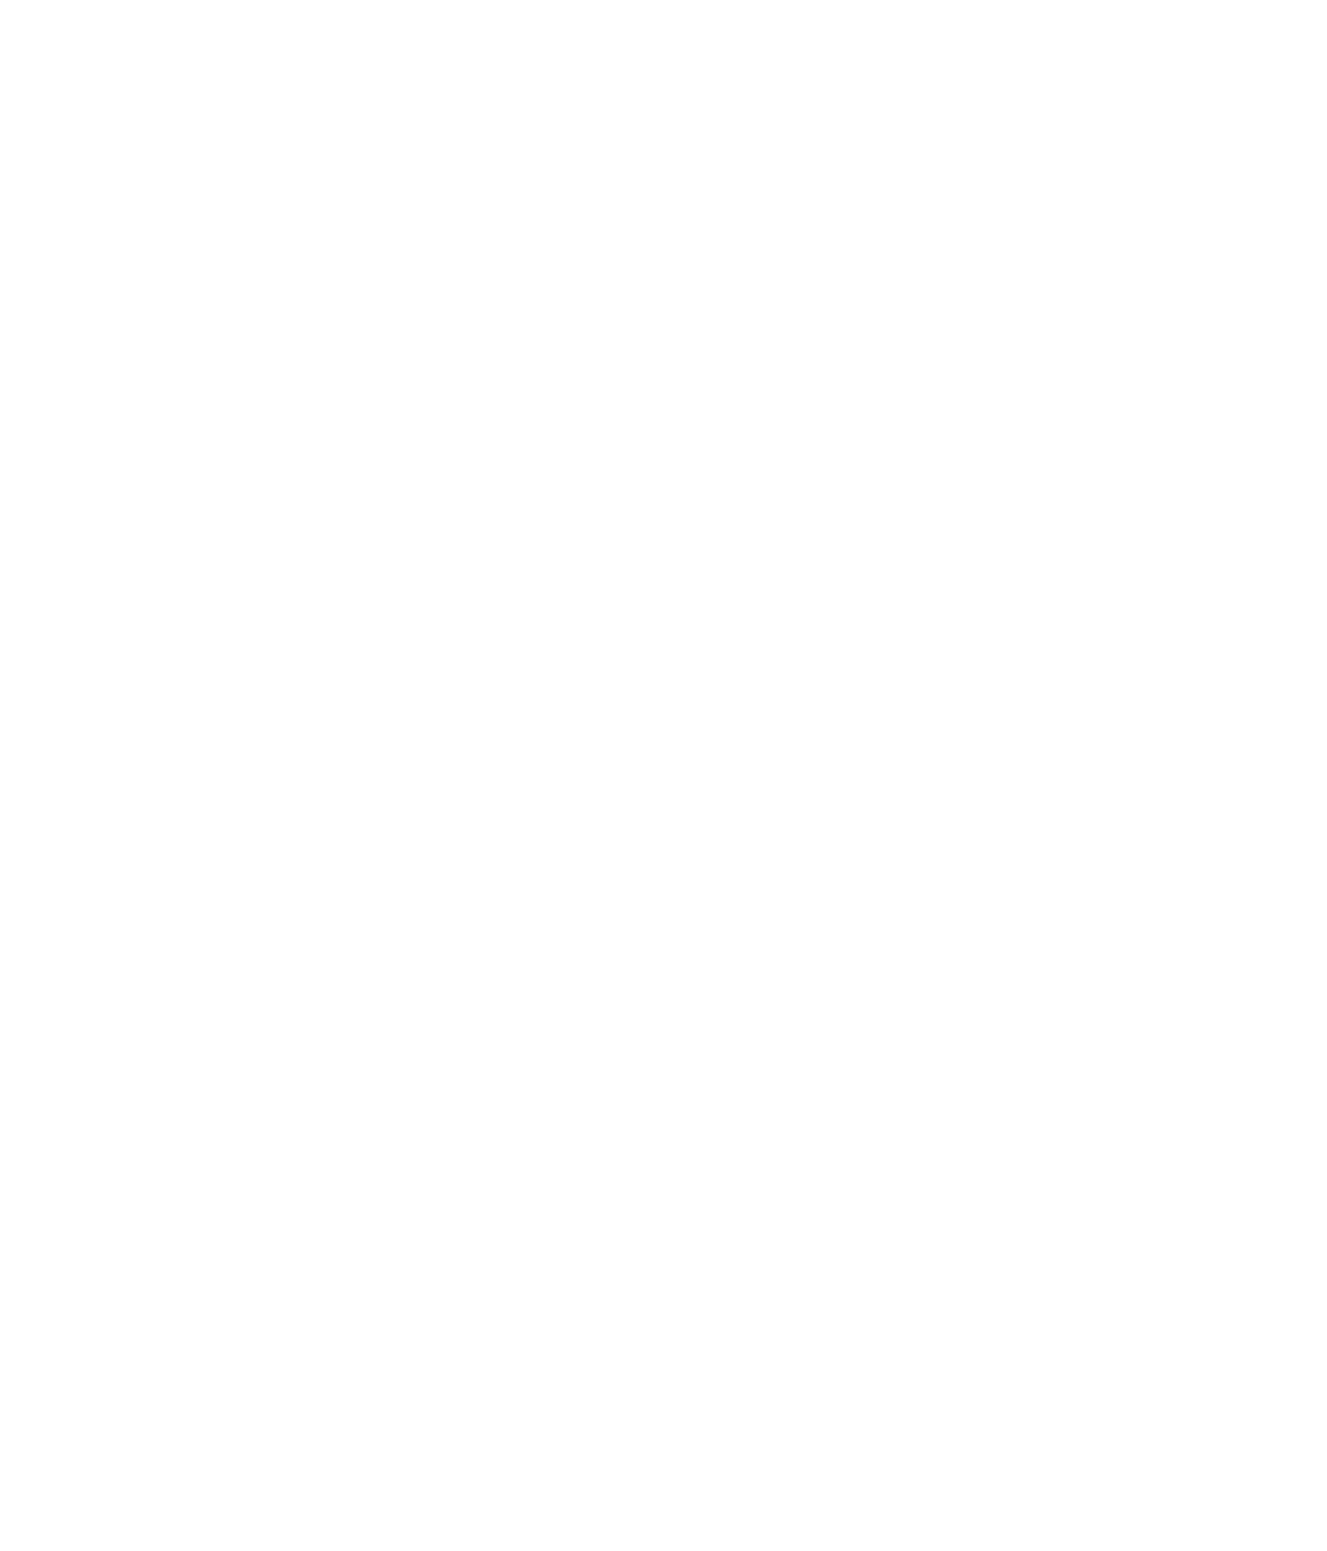 Dimensional ETF Trust logo for dark backgrounds (transparent PNG)